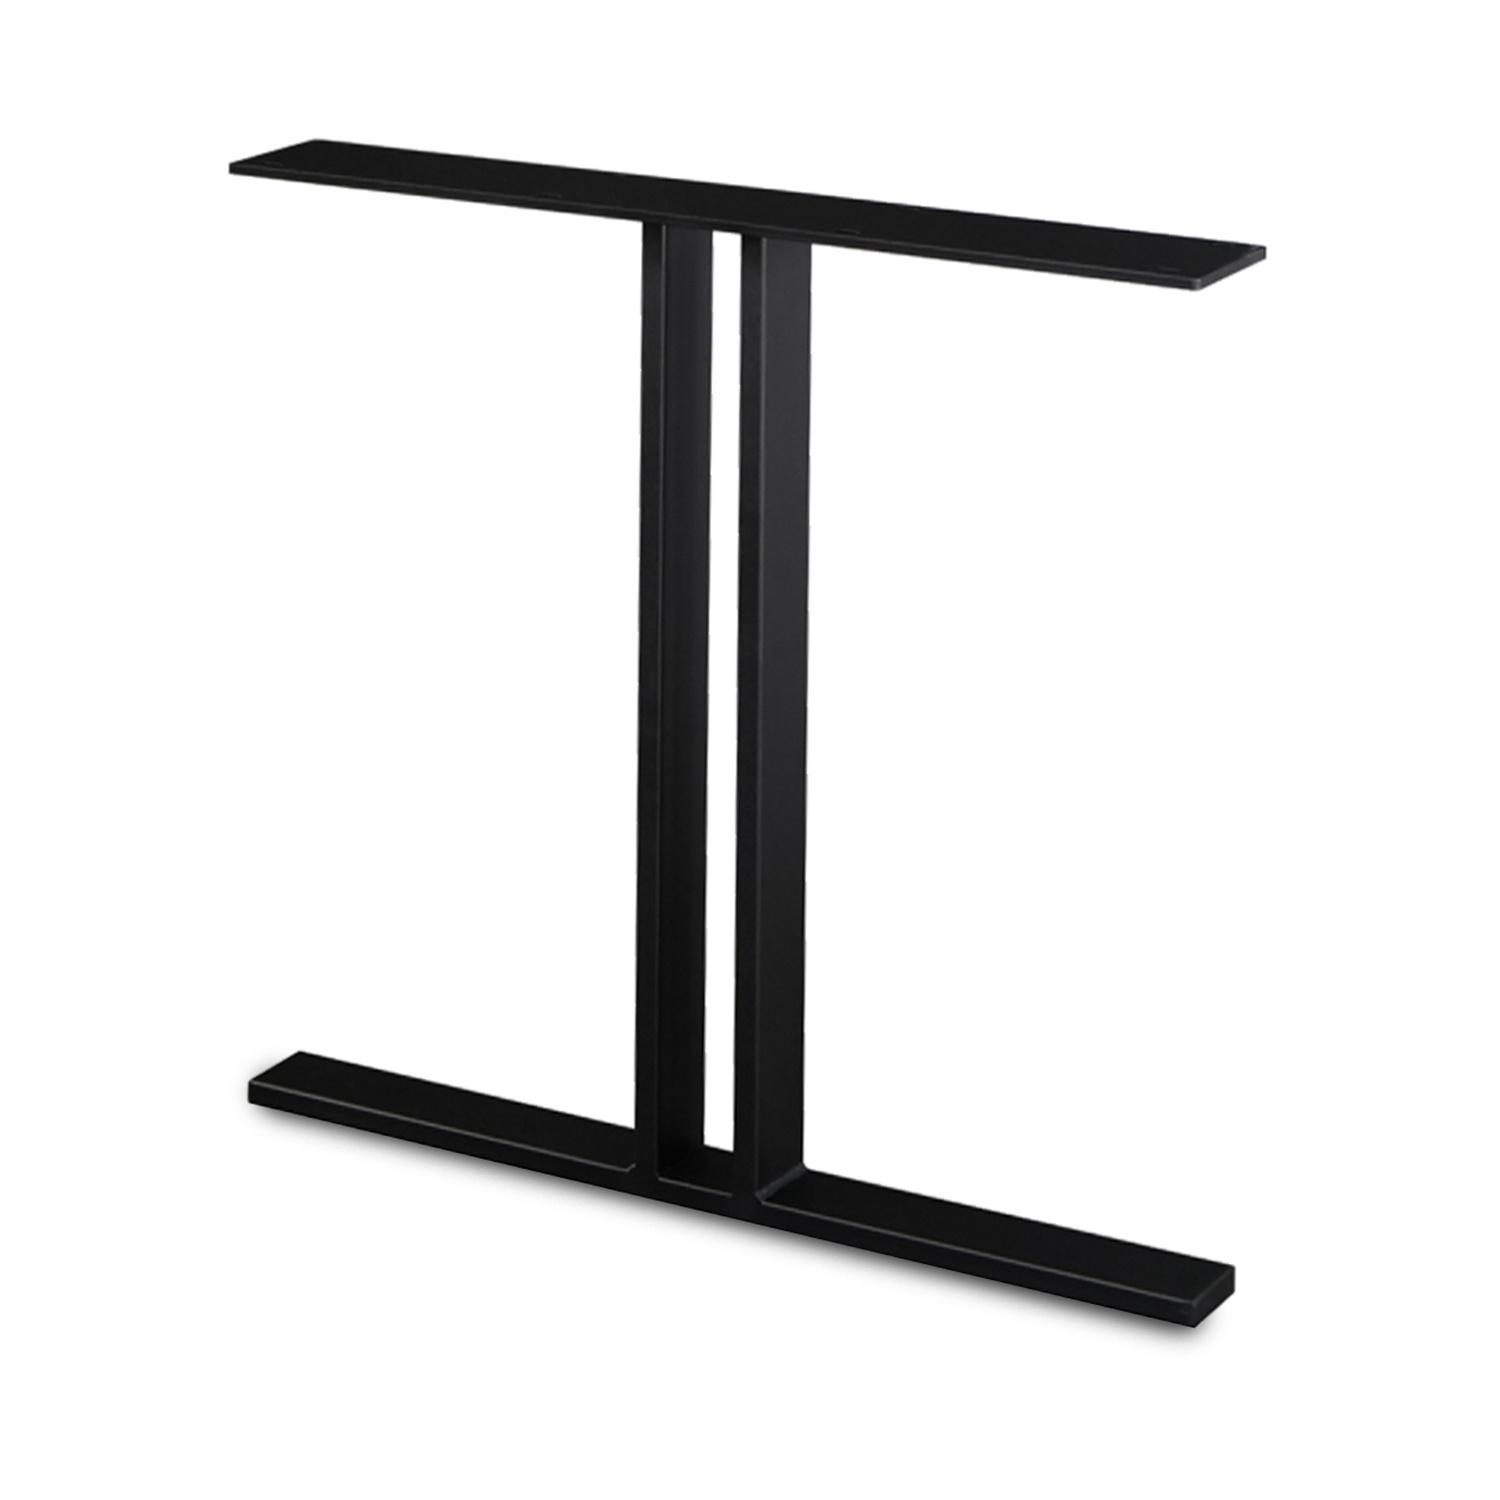  Stalen T-tafelpoten SLANK (SET) 2x8 cm - 78 cm breed - 72 cm hoog - T-poot GEPOEDERCOAT zwart